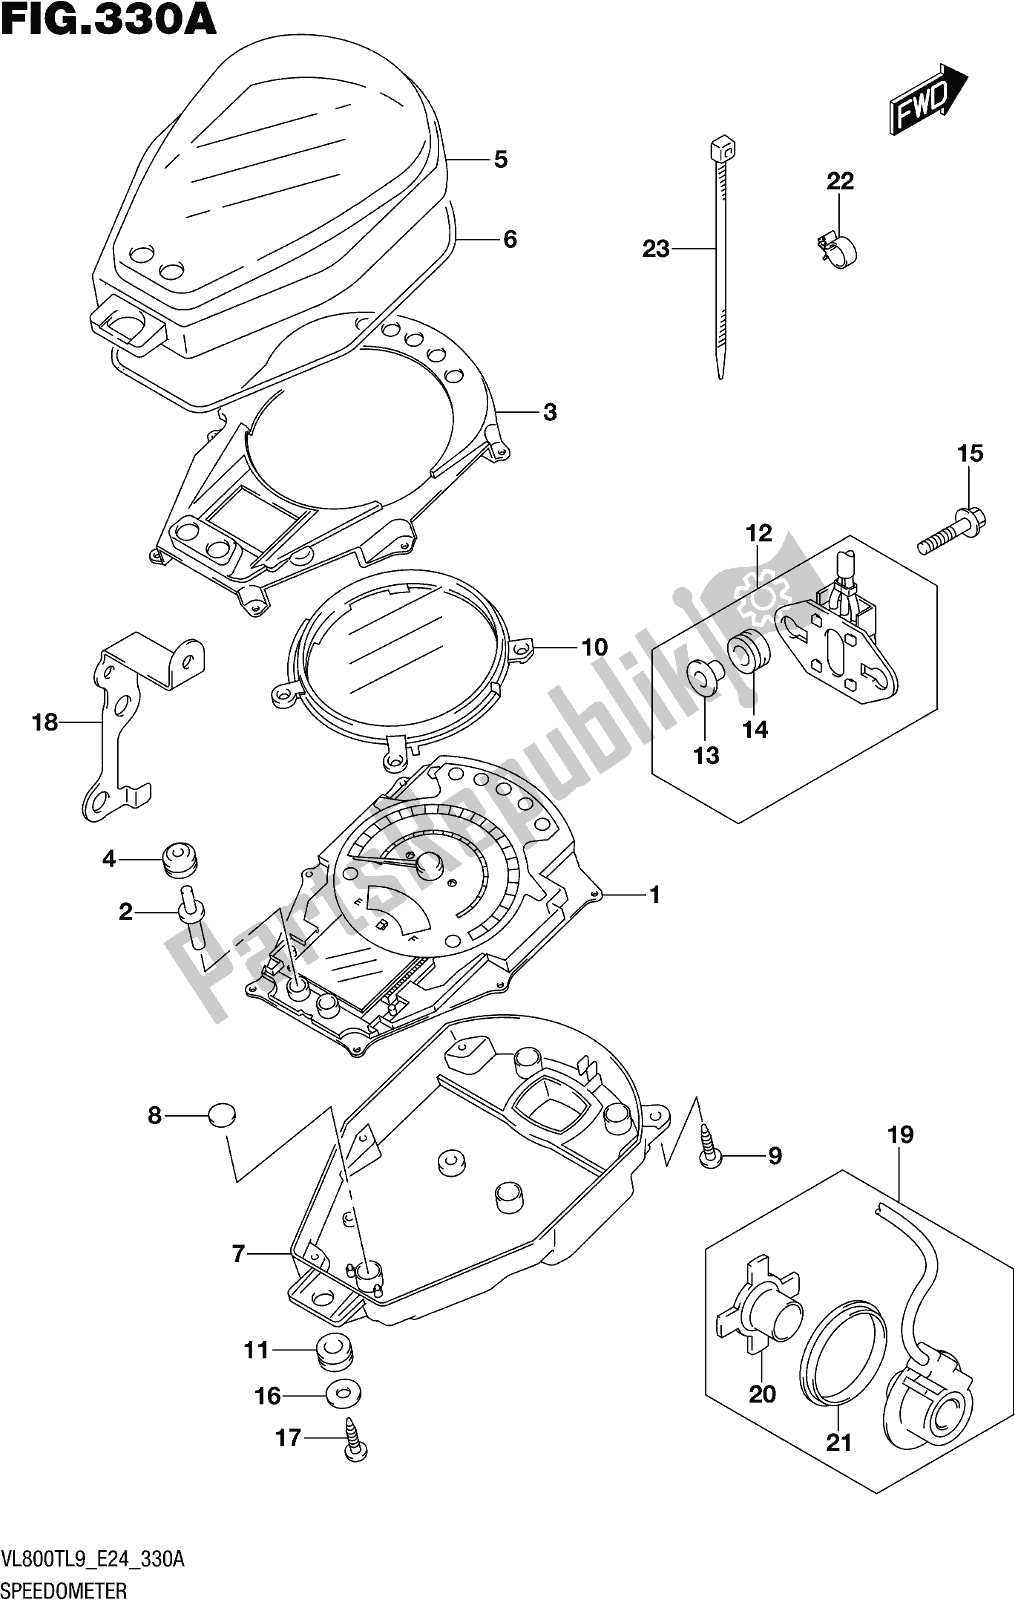 Alle onderdelen voor de Fig. 330a Speedometer van de Suzuki VL 800T 2019